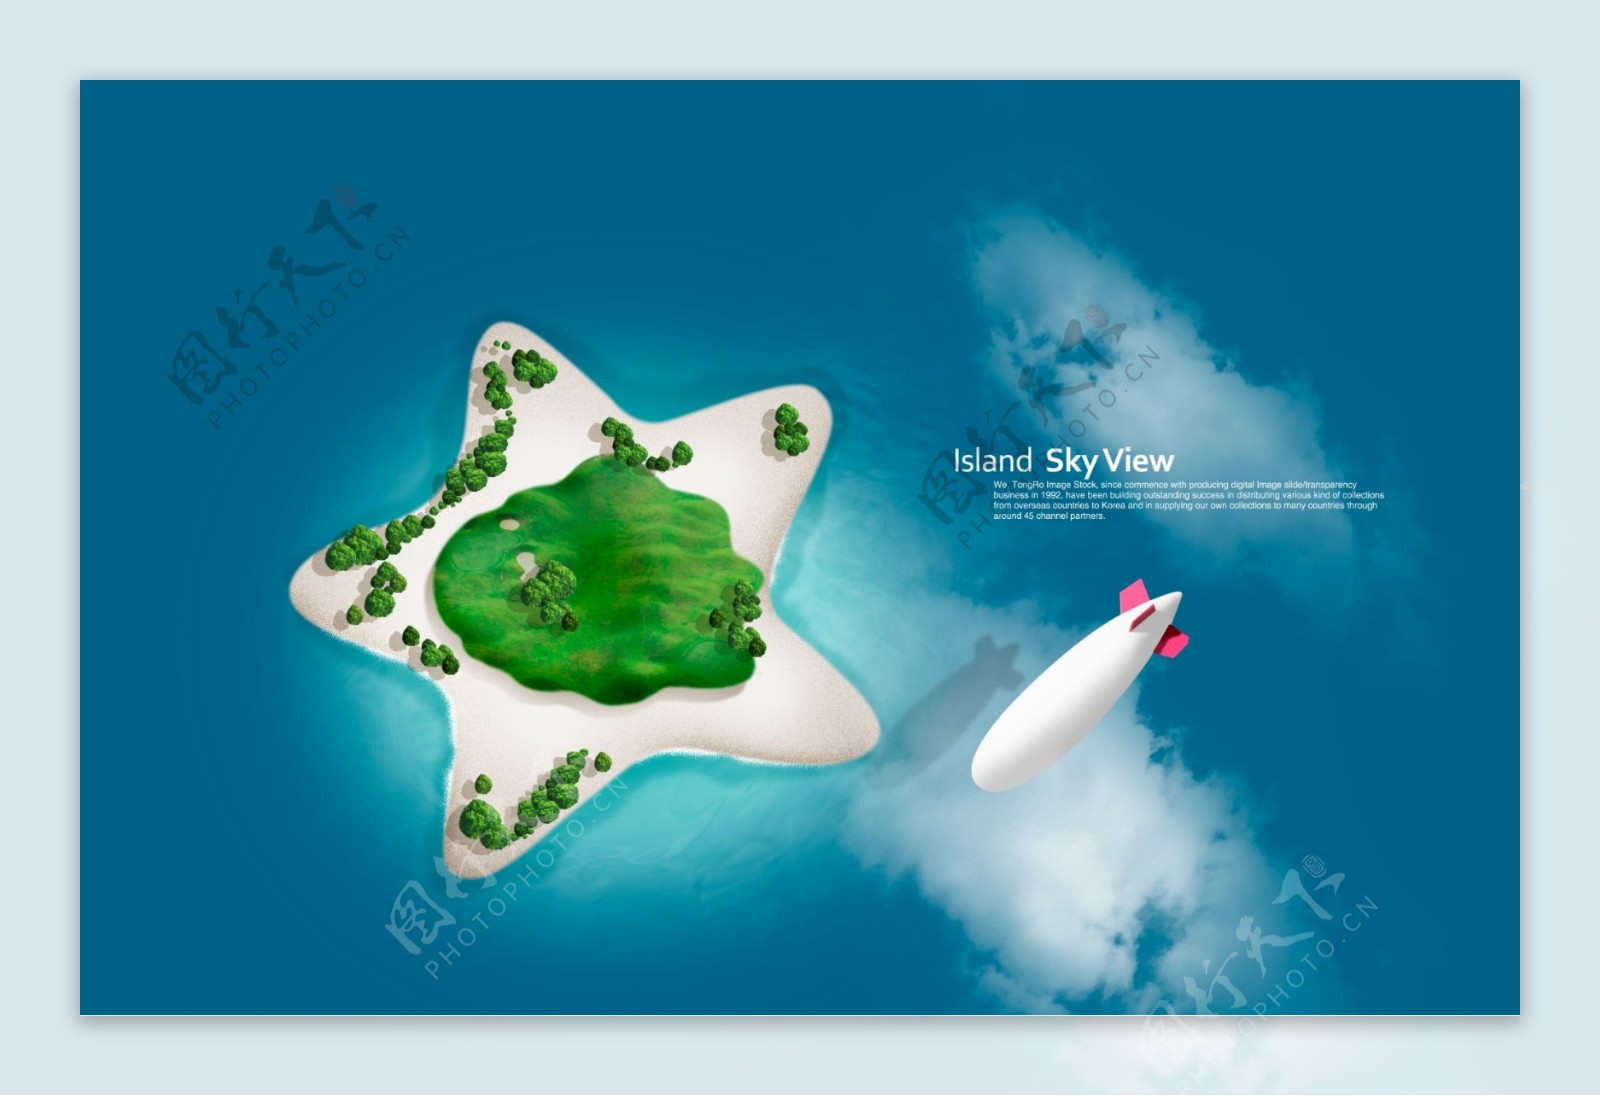 飞艇和五角形岛屿鸟瞰图素材